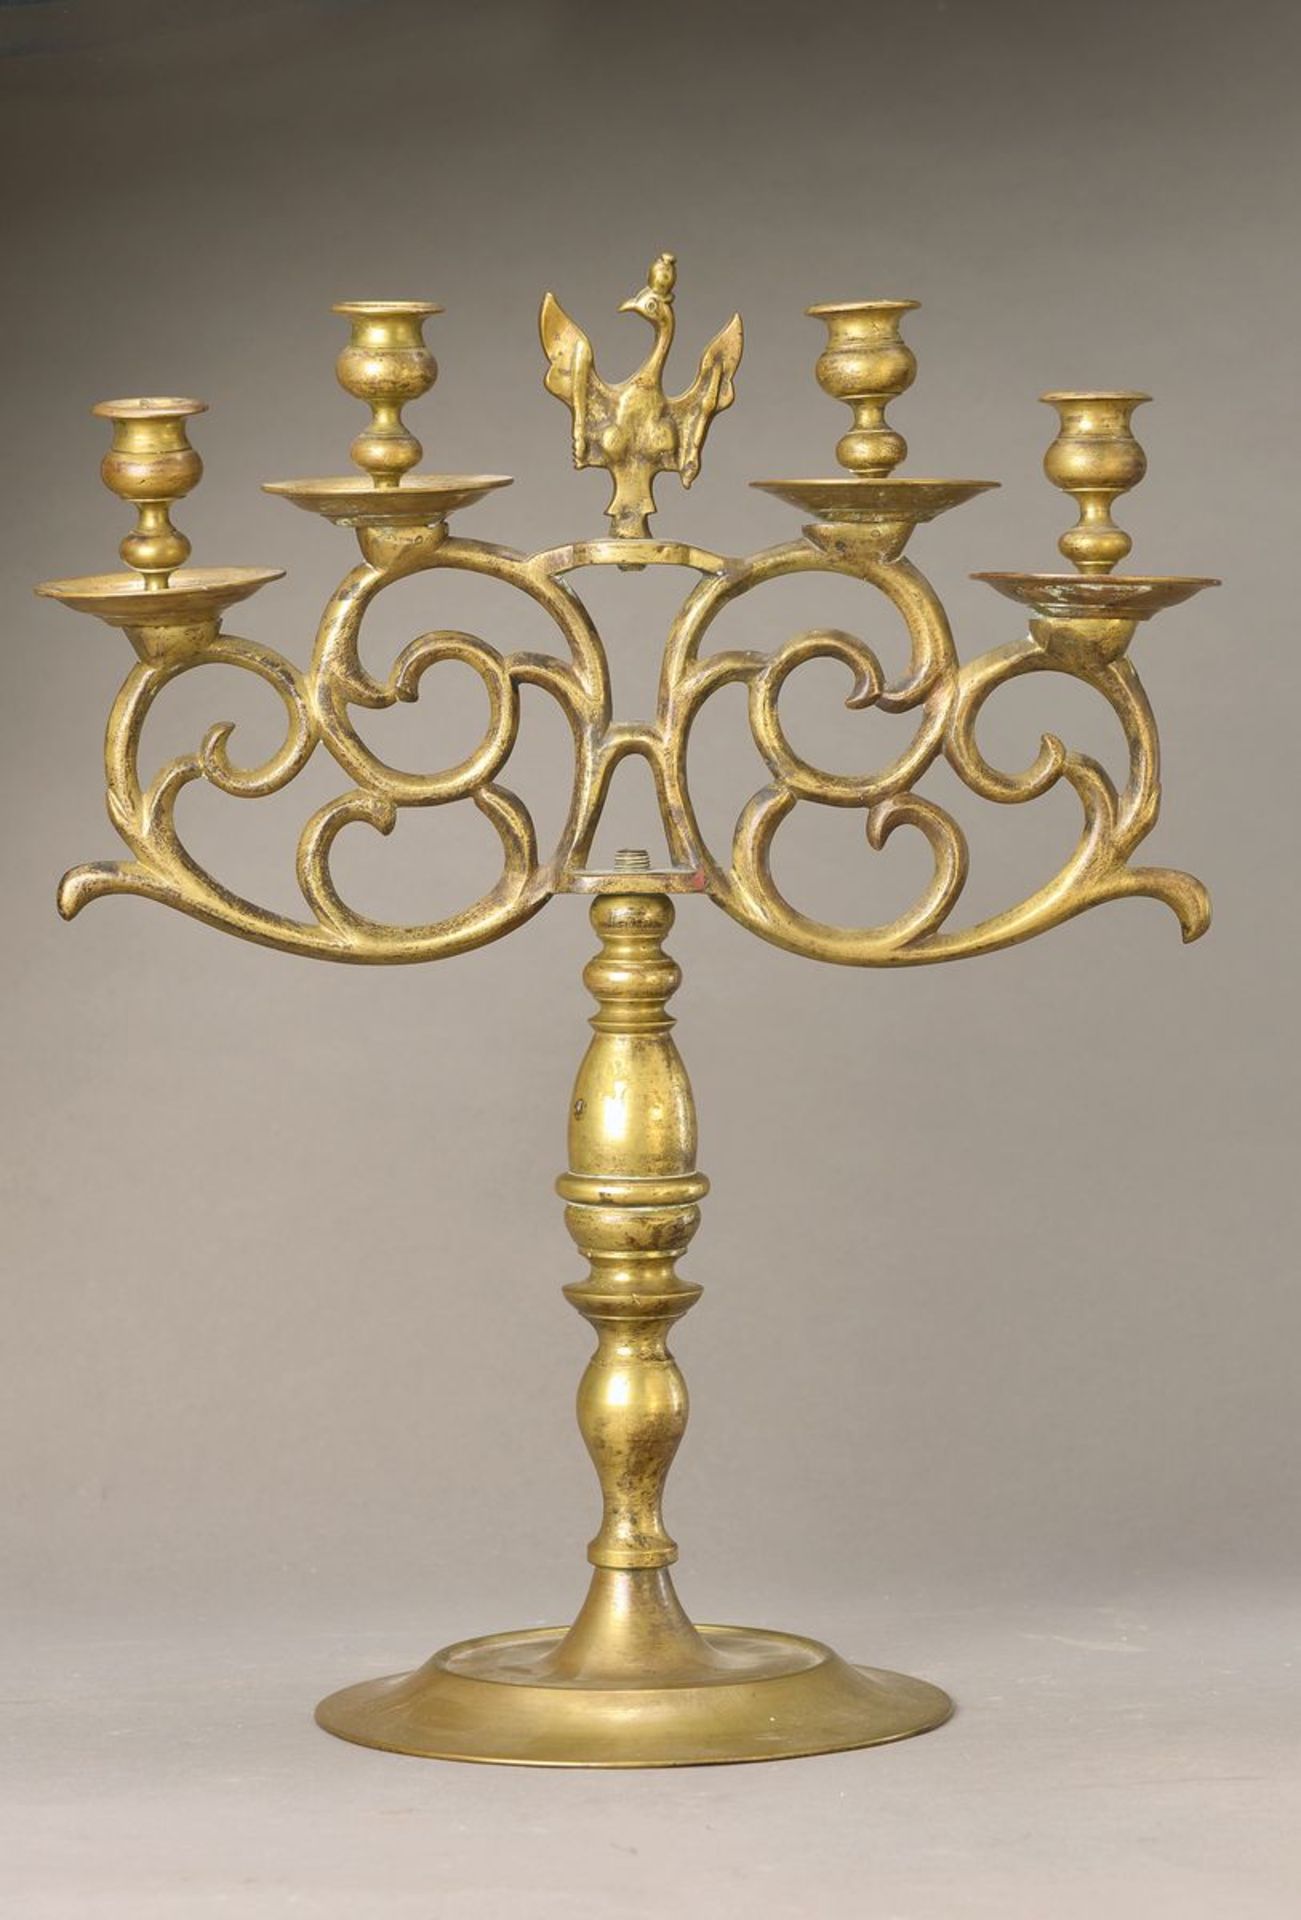 Paar Kerzenleuchter, Preussen, um 1760-70, Messing, vier Brennstellen auf Voluten, mittig - Bild 2 aus 3